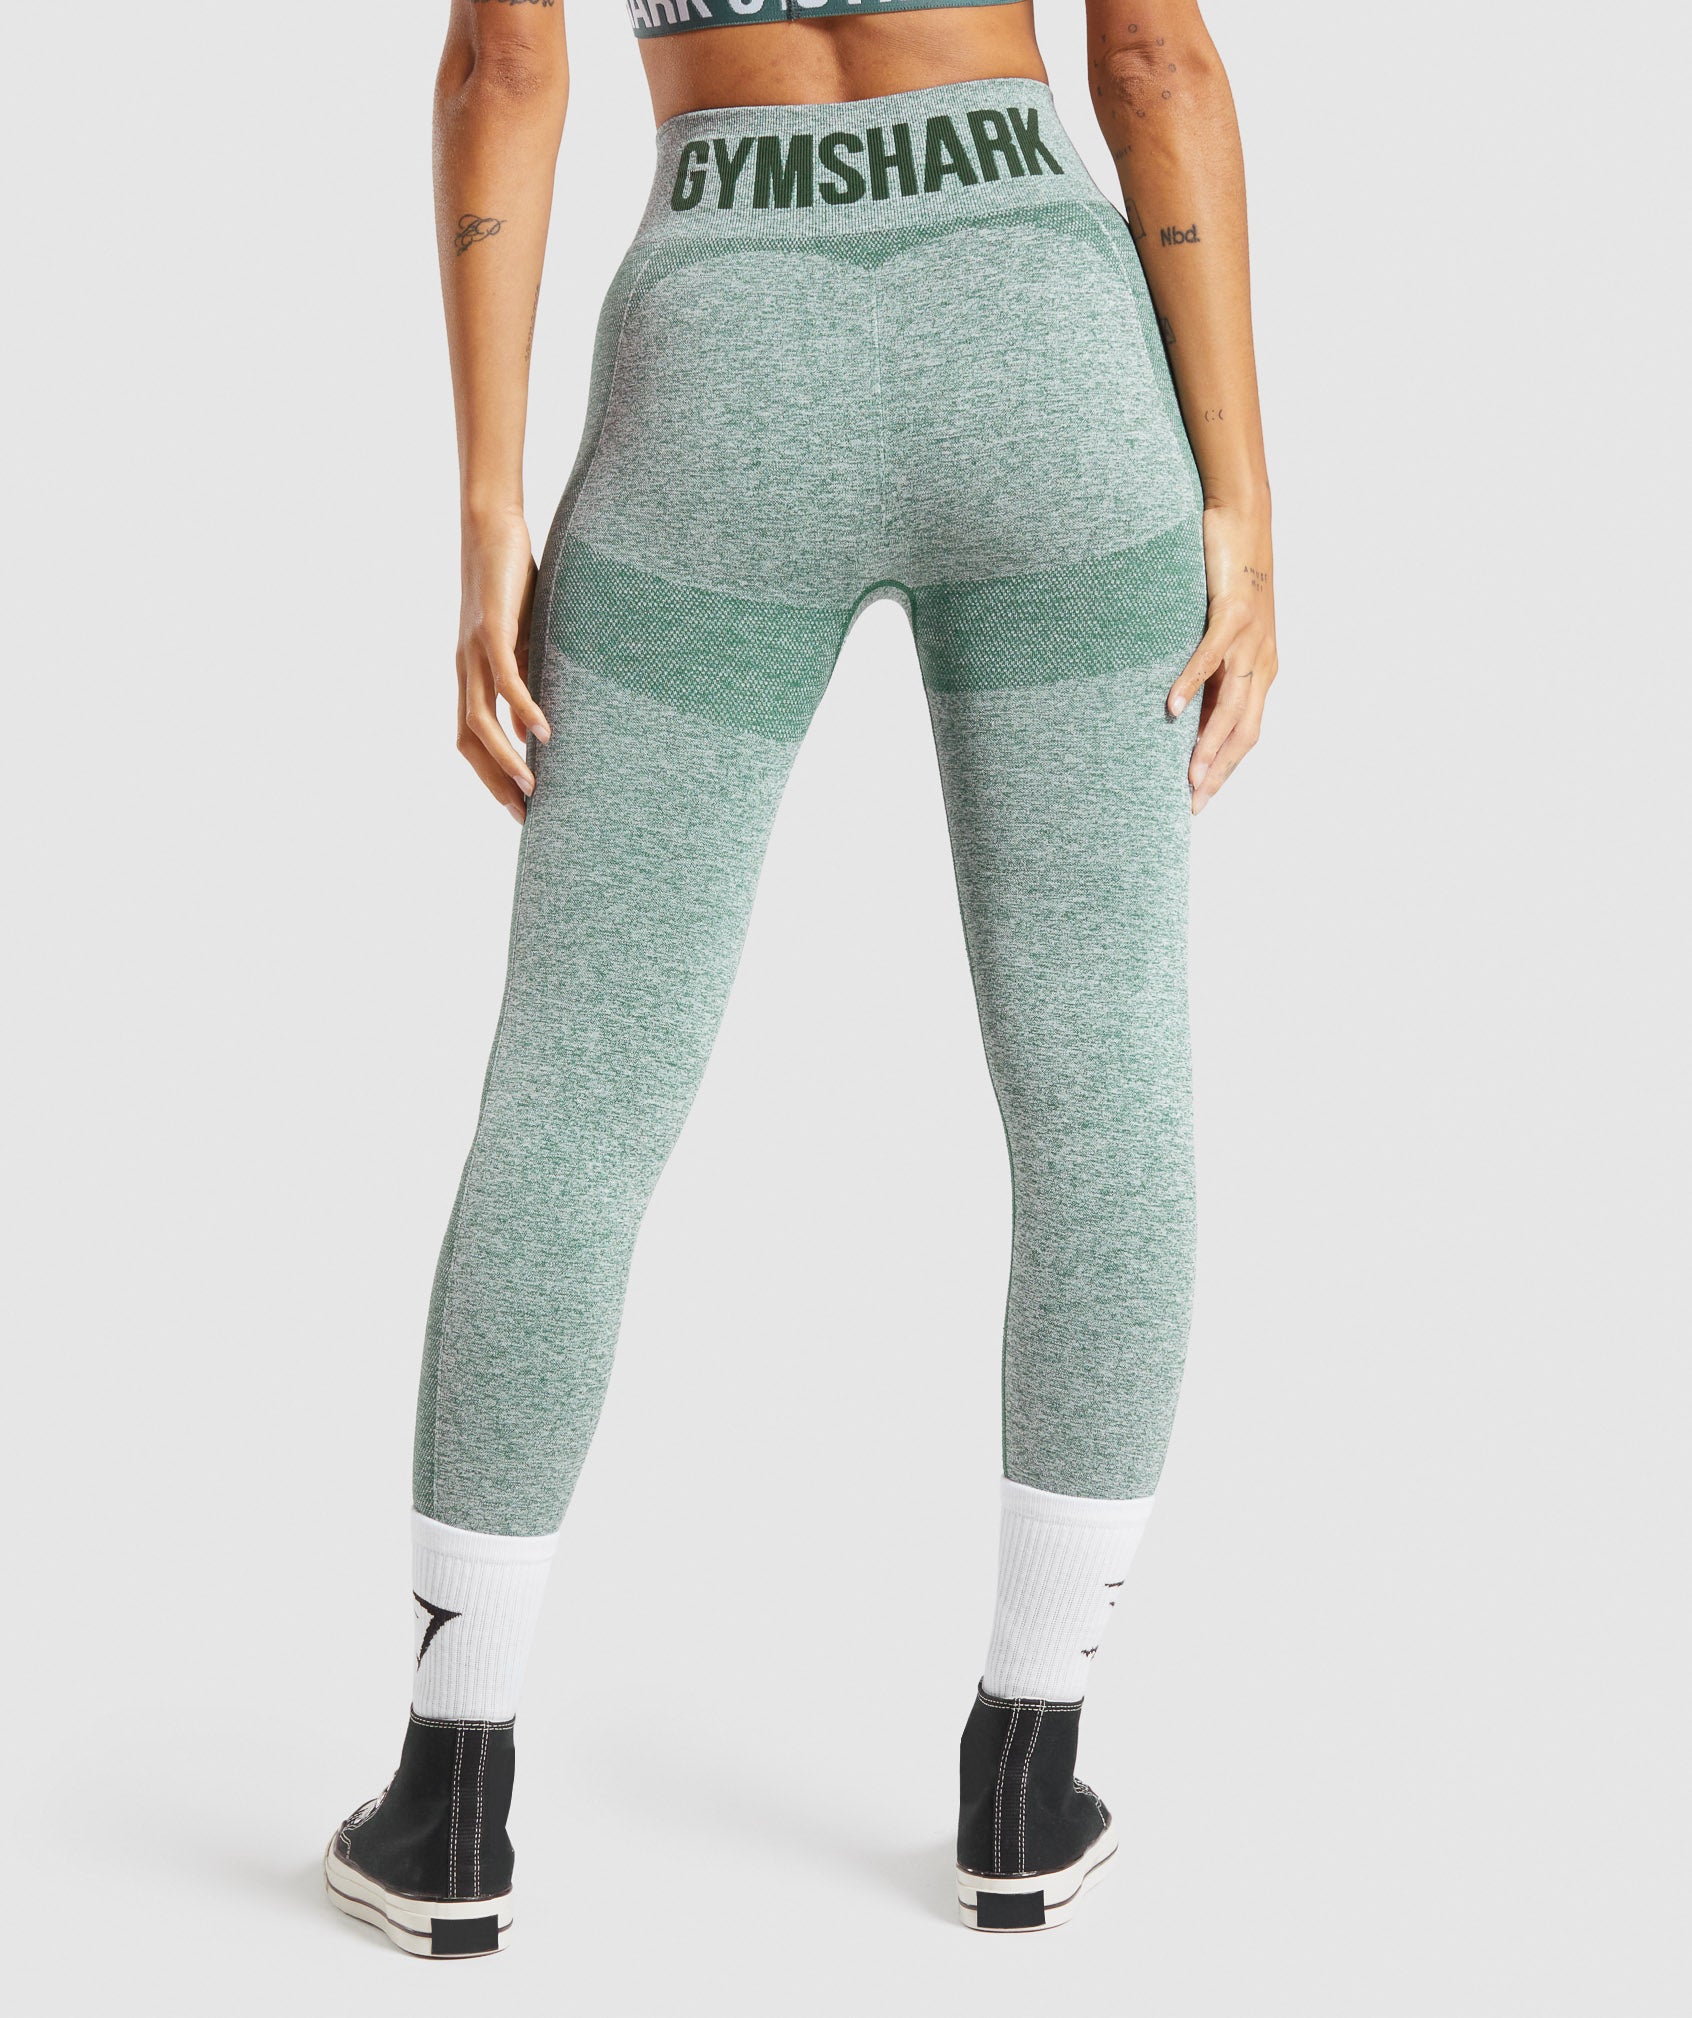 Gymshark Women's Flex High Waisted leggings Studio Green Marl Size Large